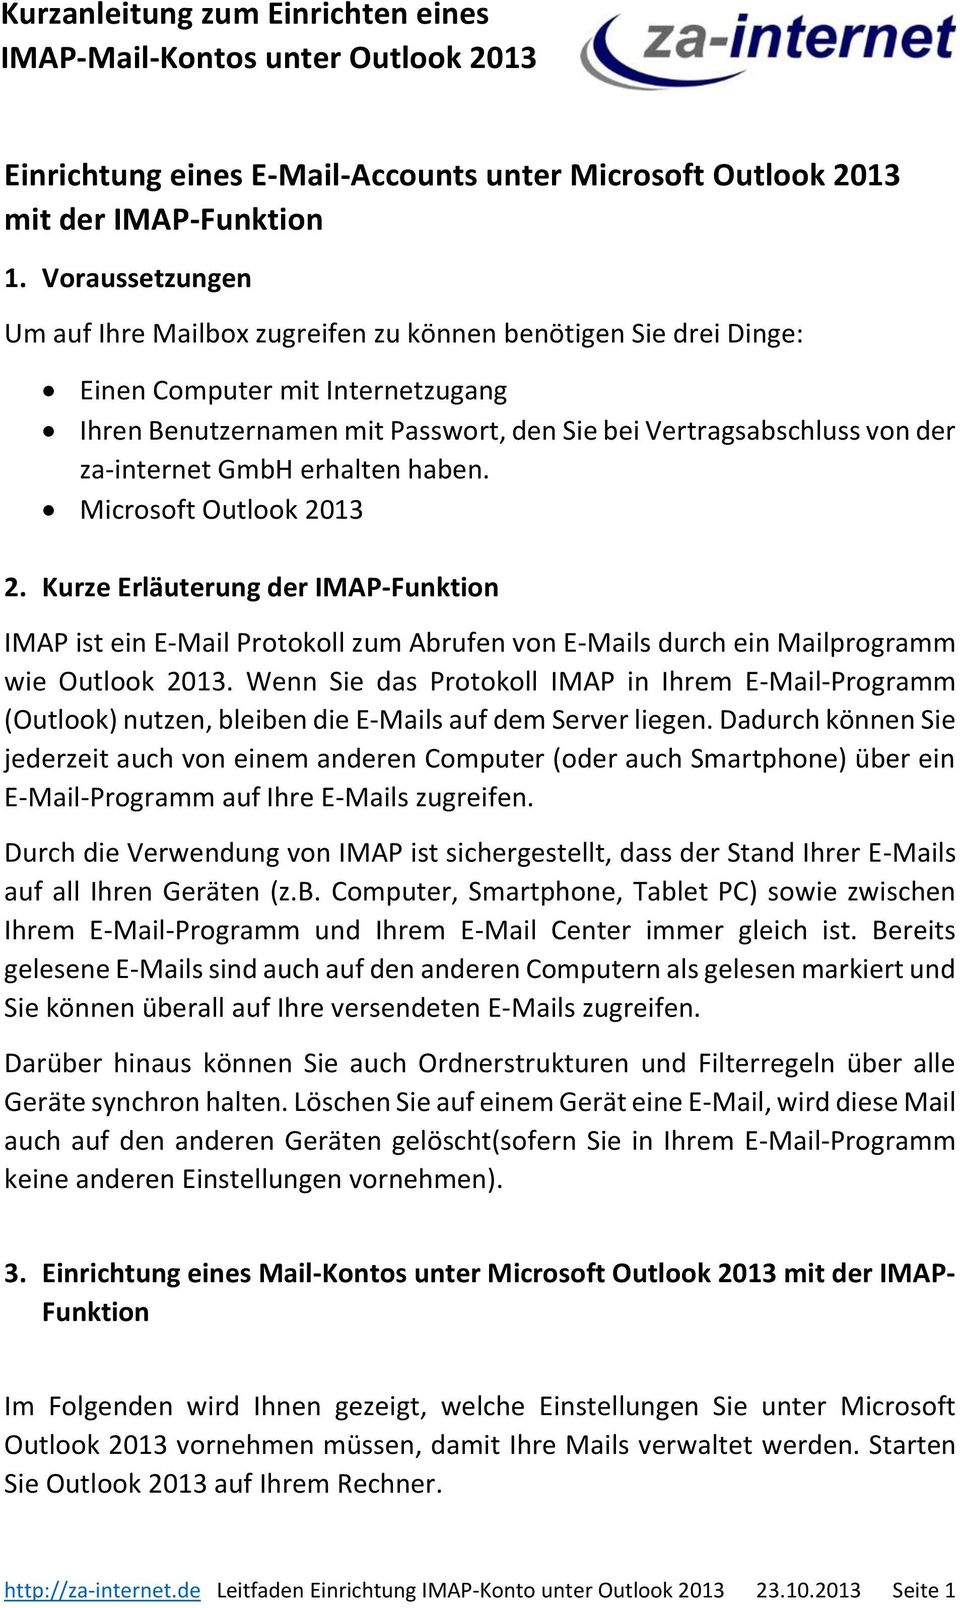 GmbH erhalten haben. Microsoft Outlook 2013 2. Kurze Erläuterung der IMAP-Funktion IMAP ist ein E-Mail Protokoll zum Abrufen von E-Mails durch ein Mailprogramm wie Outlook 2013.